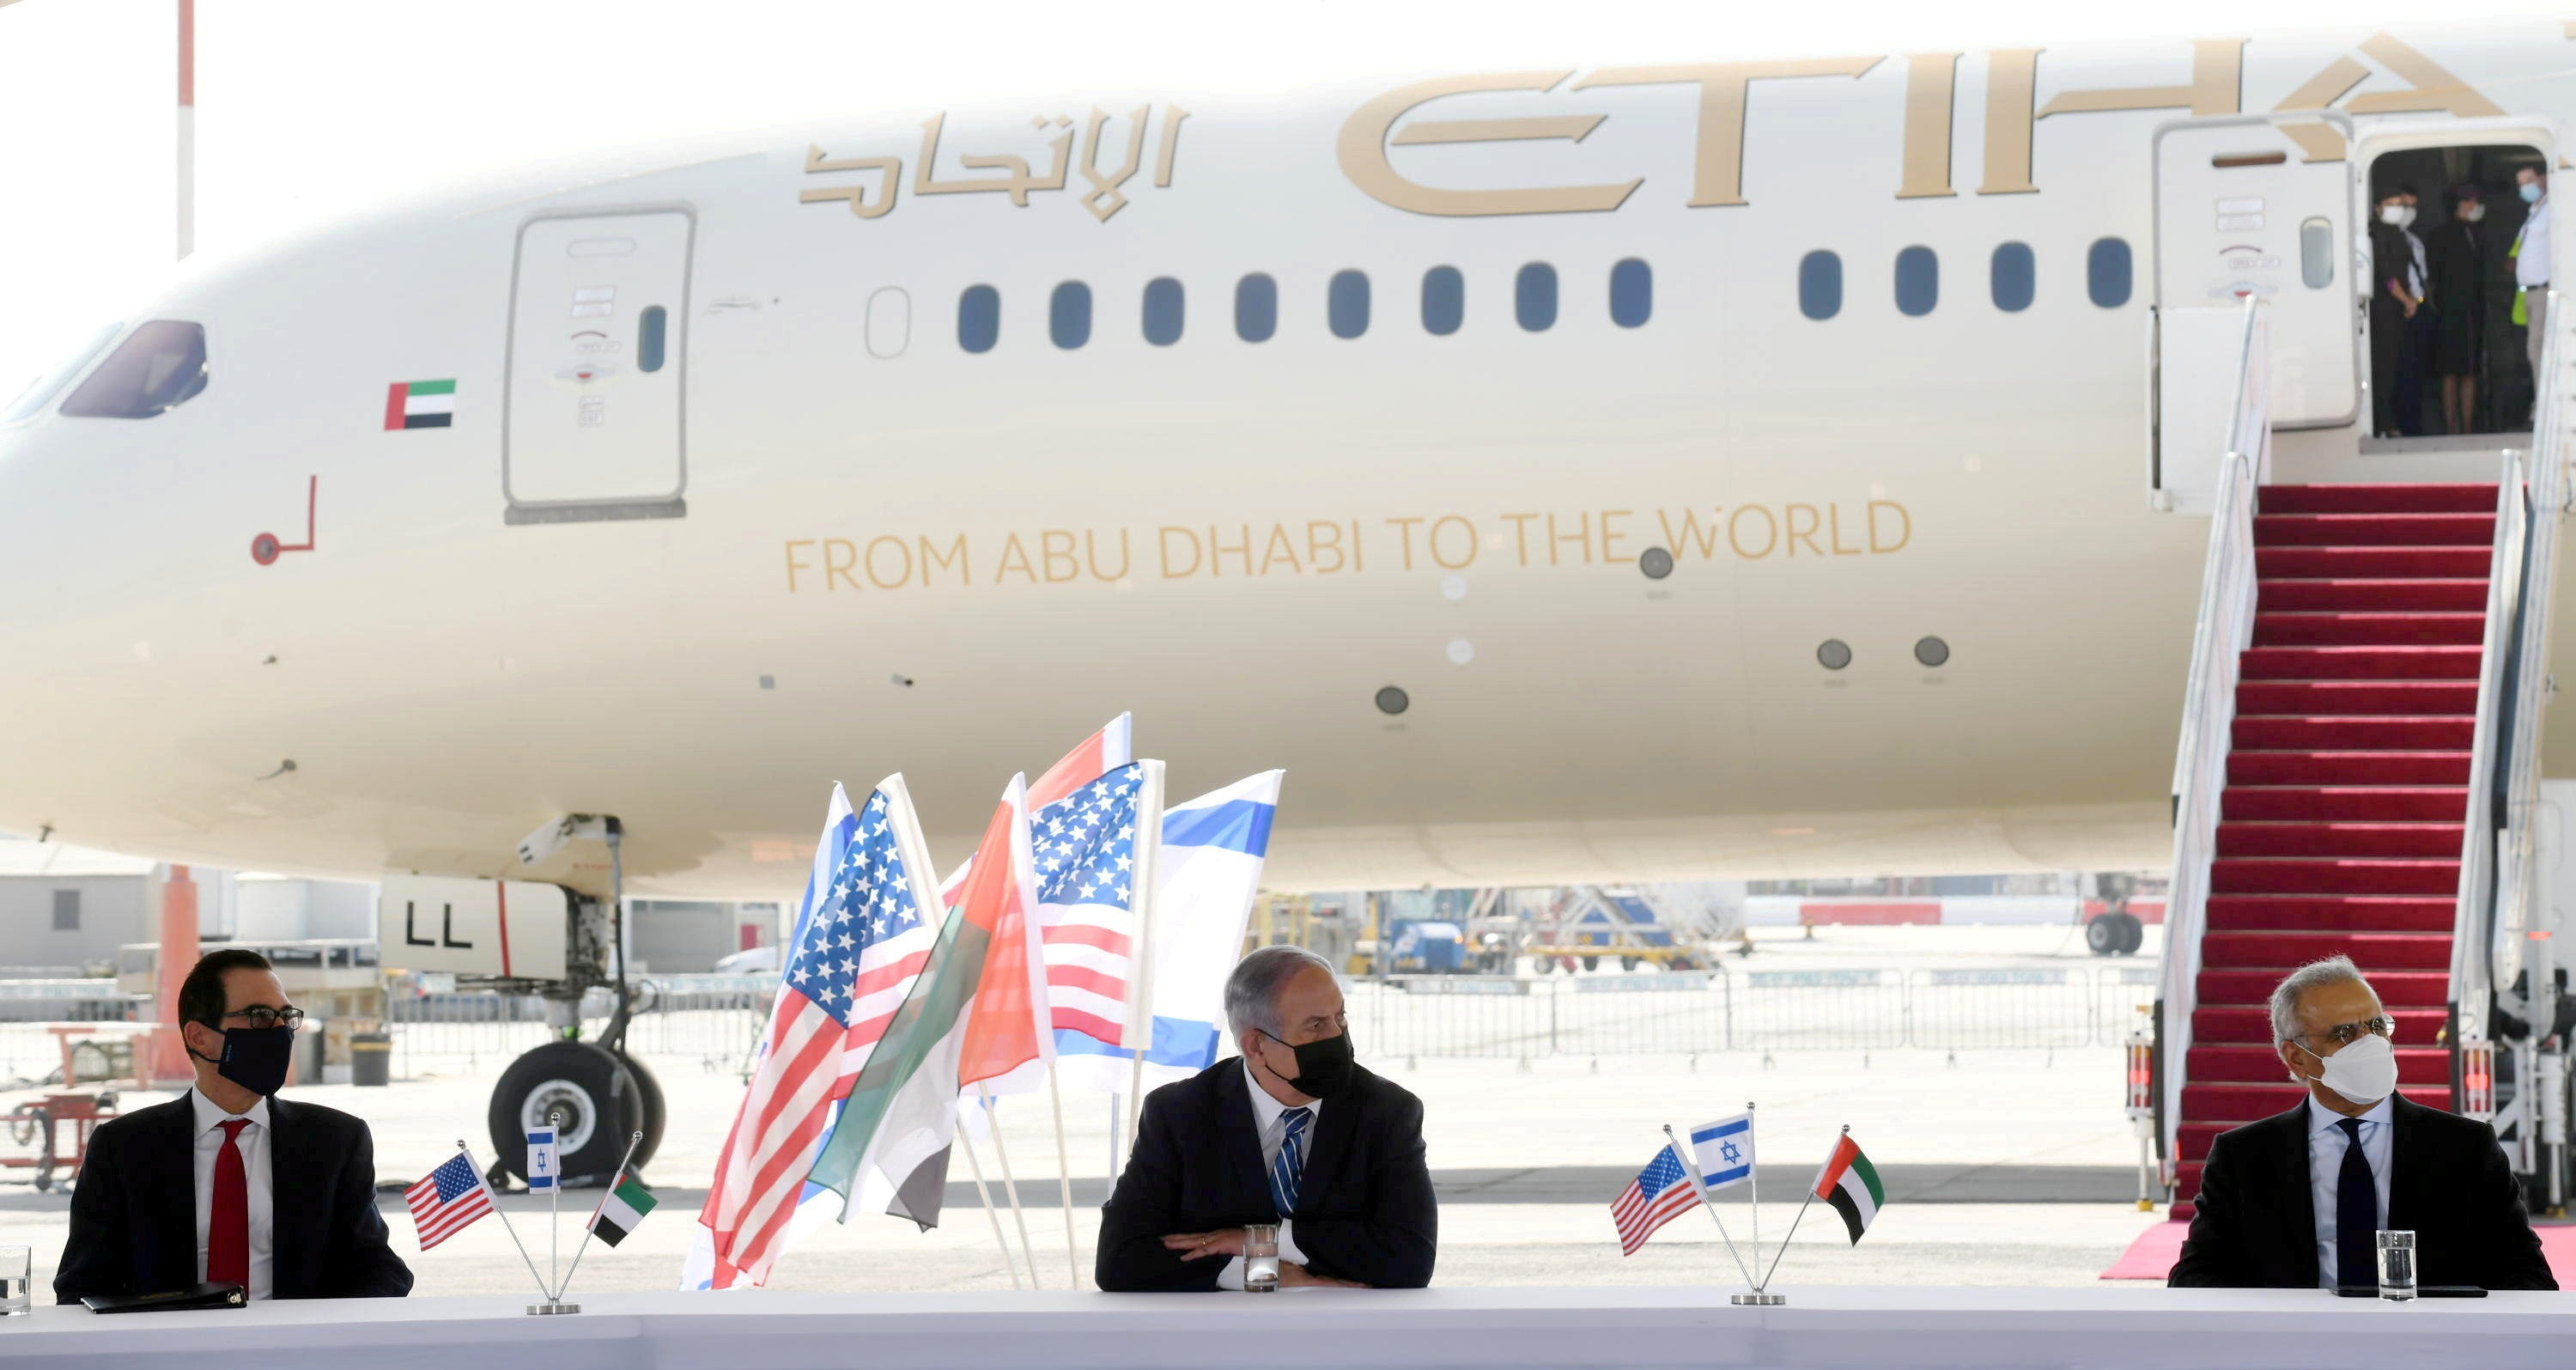  El primer ministro israelí Benjamin Netanyahu, el secretario del Tesoro de los Estados Unidos Steve Mnuchin y el Ministro de Estado de los Emiratos Árabes Unidos Obaid Humaid al-Tayer, en el aeropuerto Ben Gurion, cerca de Tel Aviv (WAM/Handout via REUTERS)